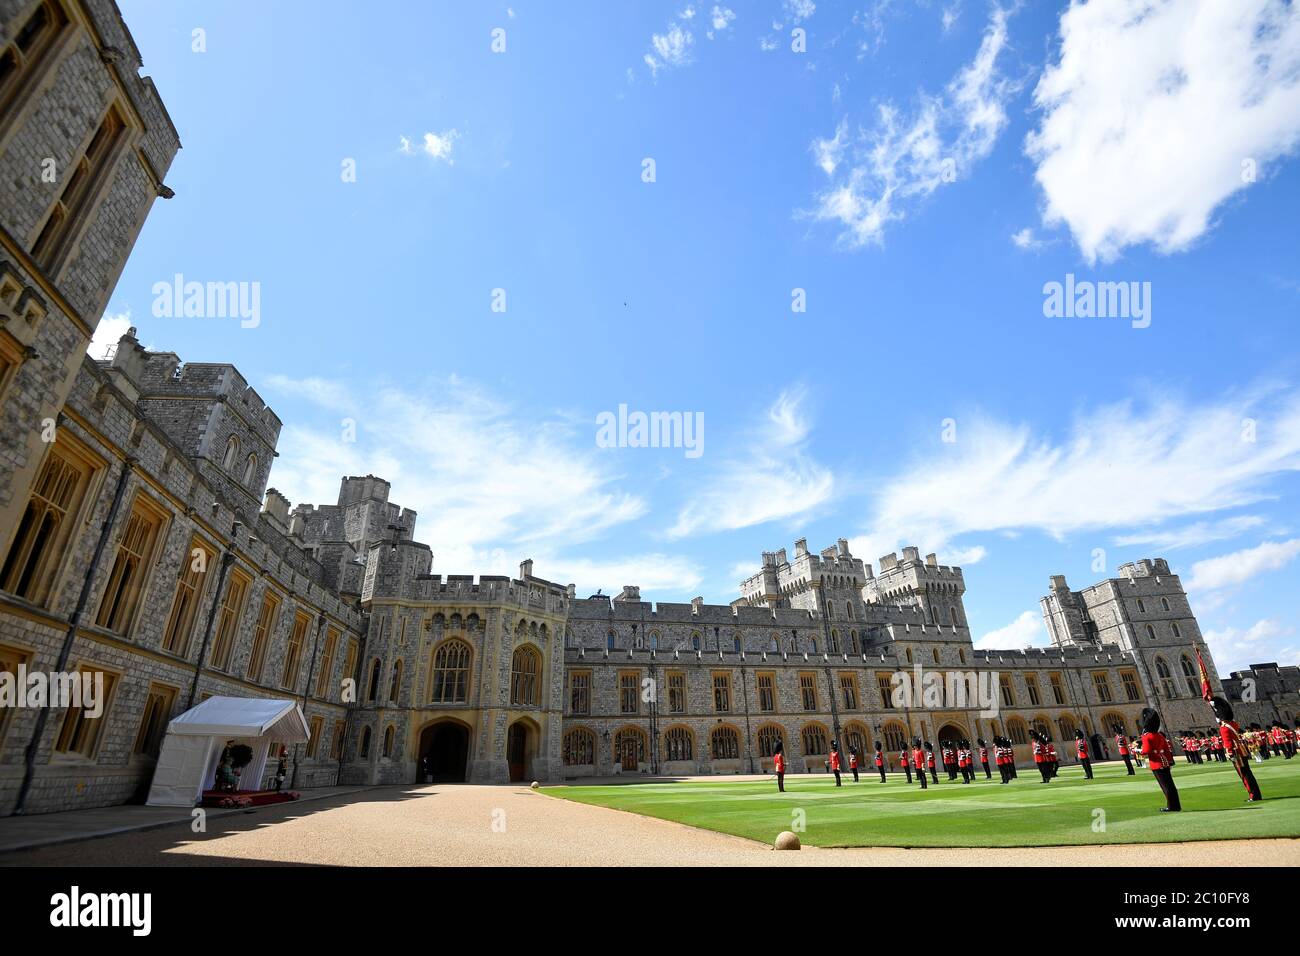 Les Guardmen gardent la distance sociale alors qu'ils se tiennent en formation pour une cérémonie au château de Windsor pour marquer l'anniversaire officiel de la reine Elizabeth II Banque D'Images